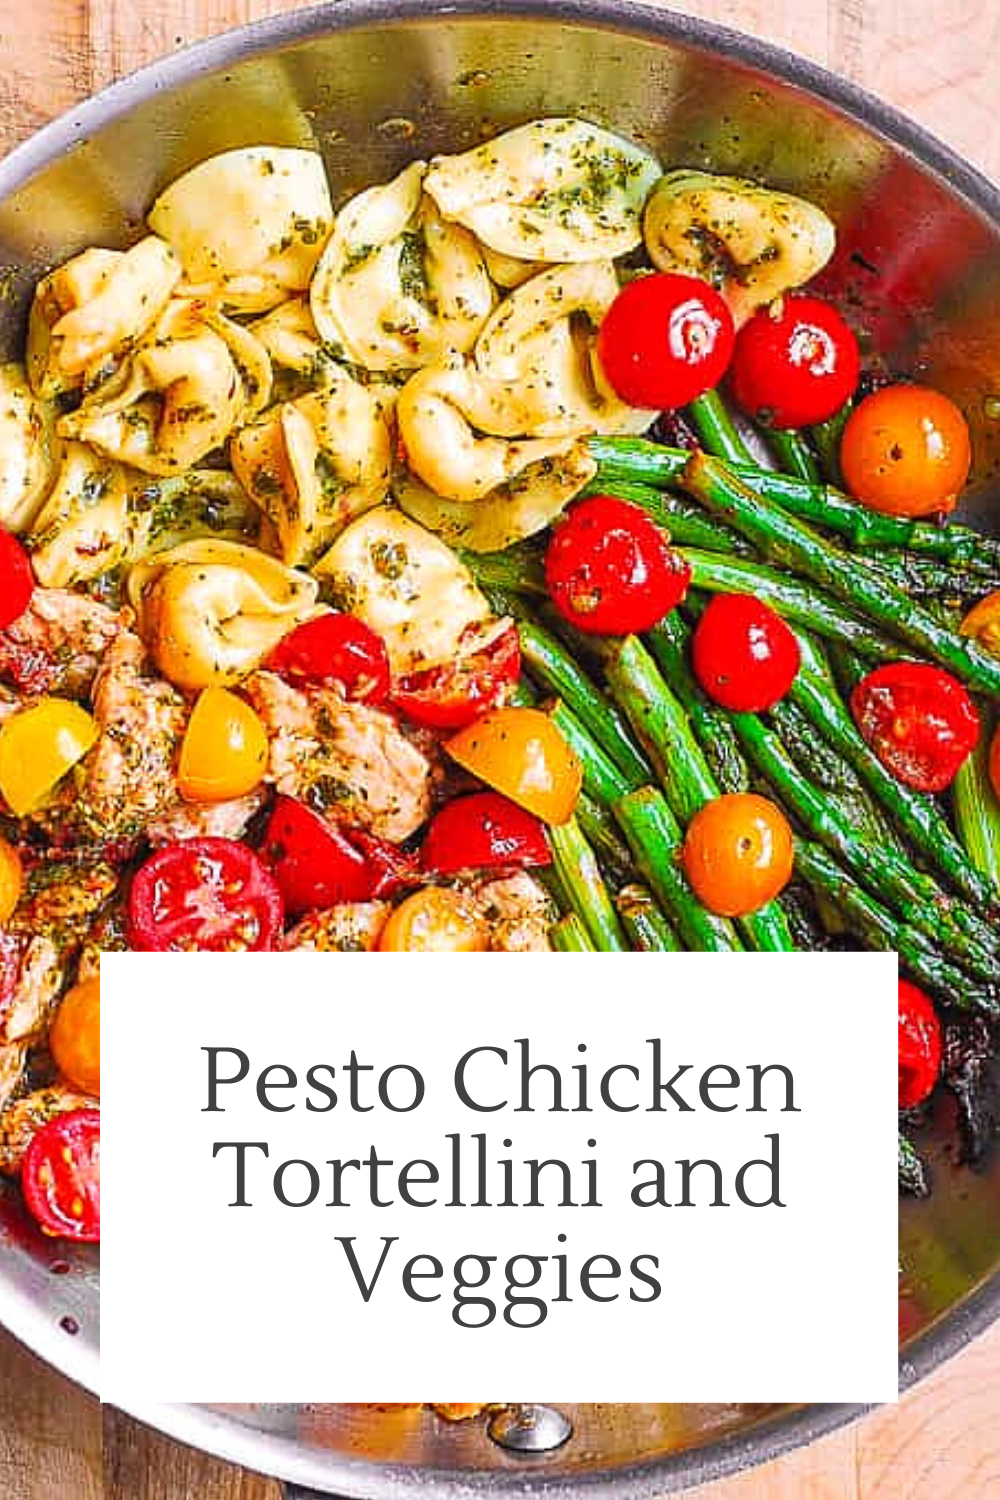 Pesto Chicken Tortellini and Veggies